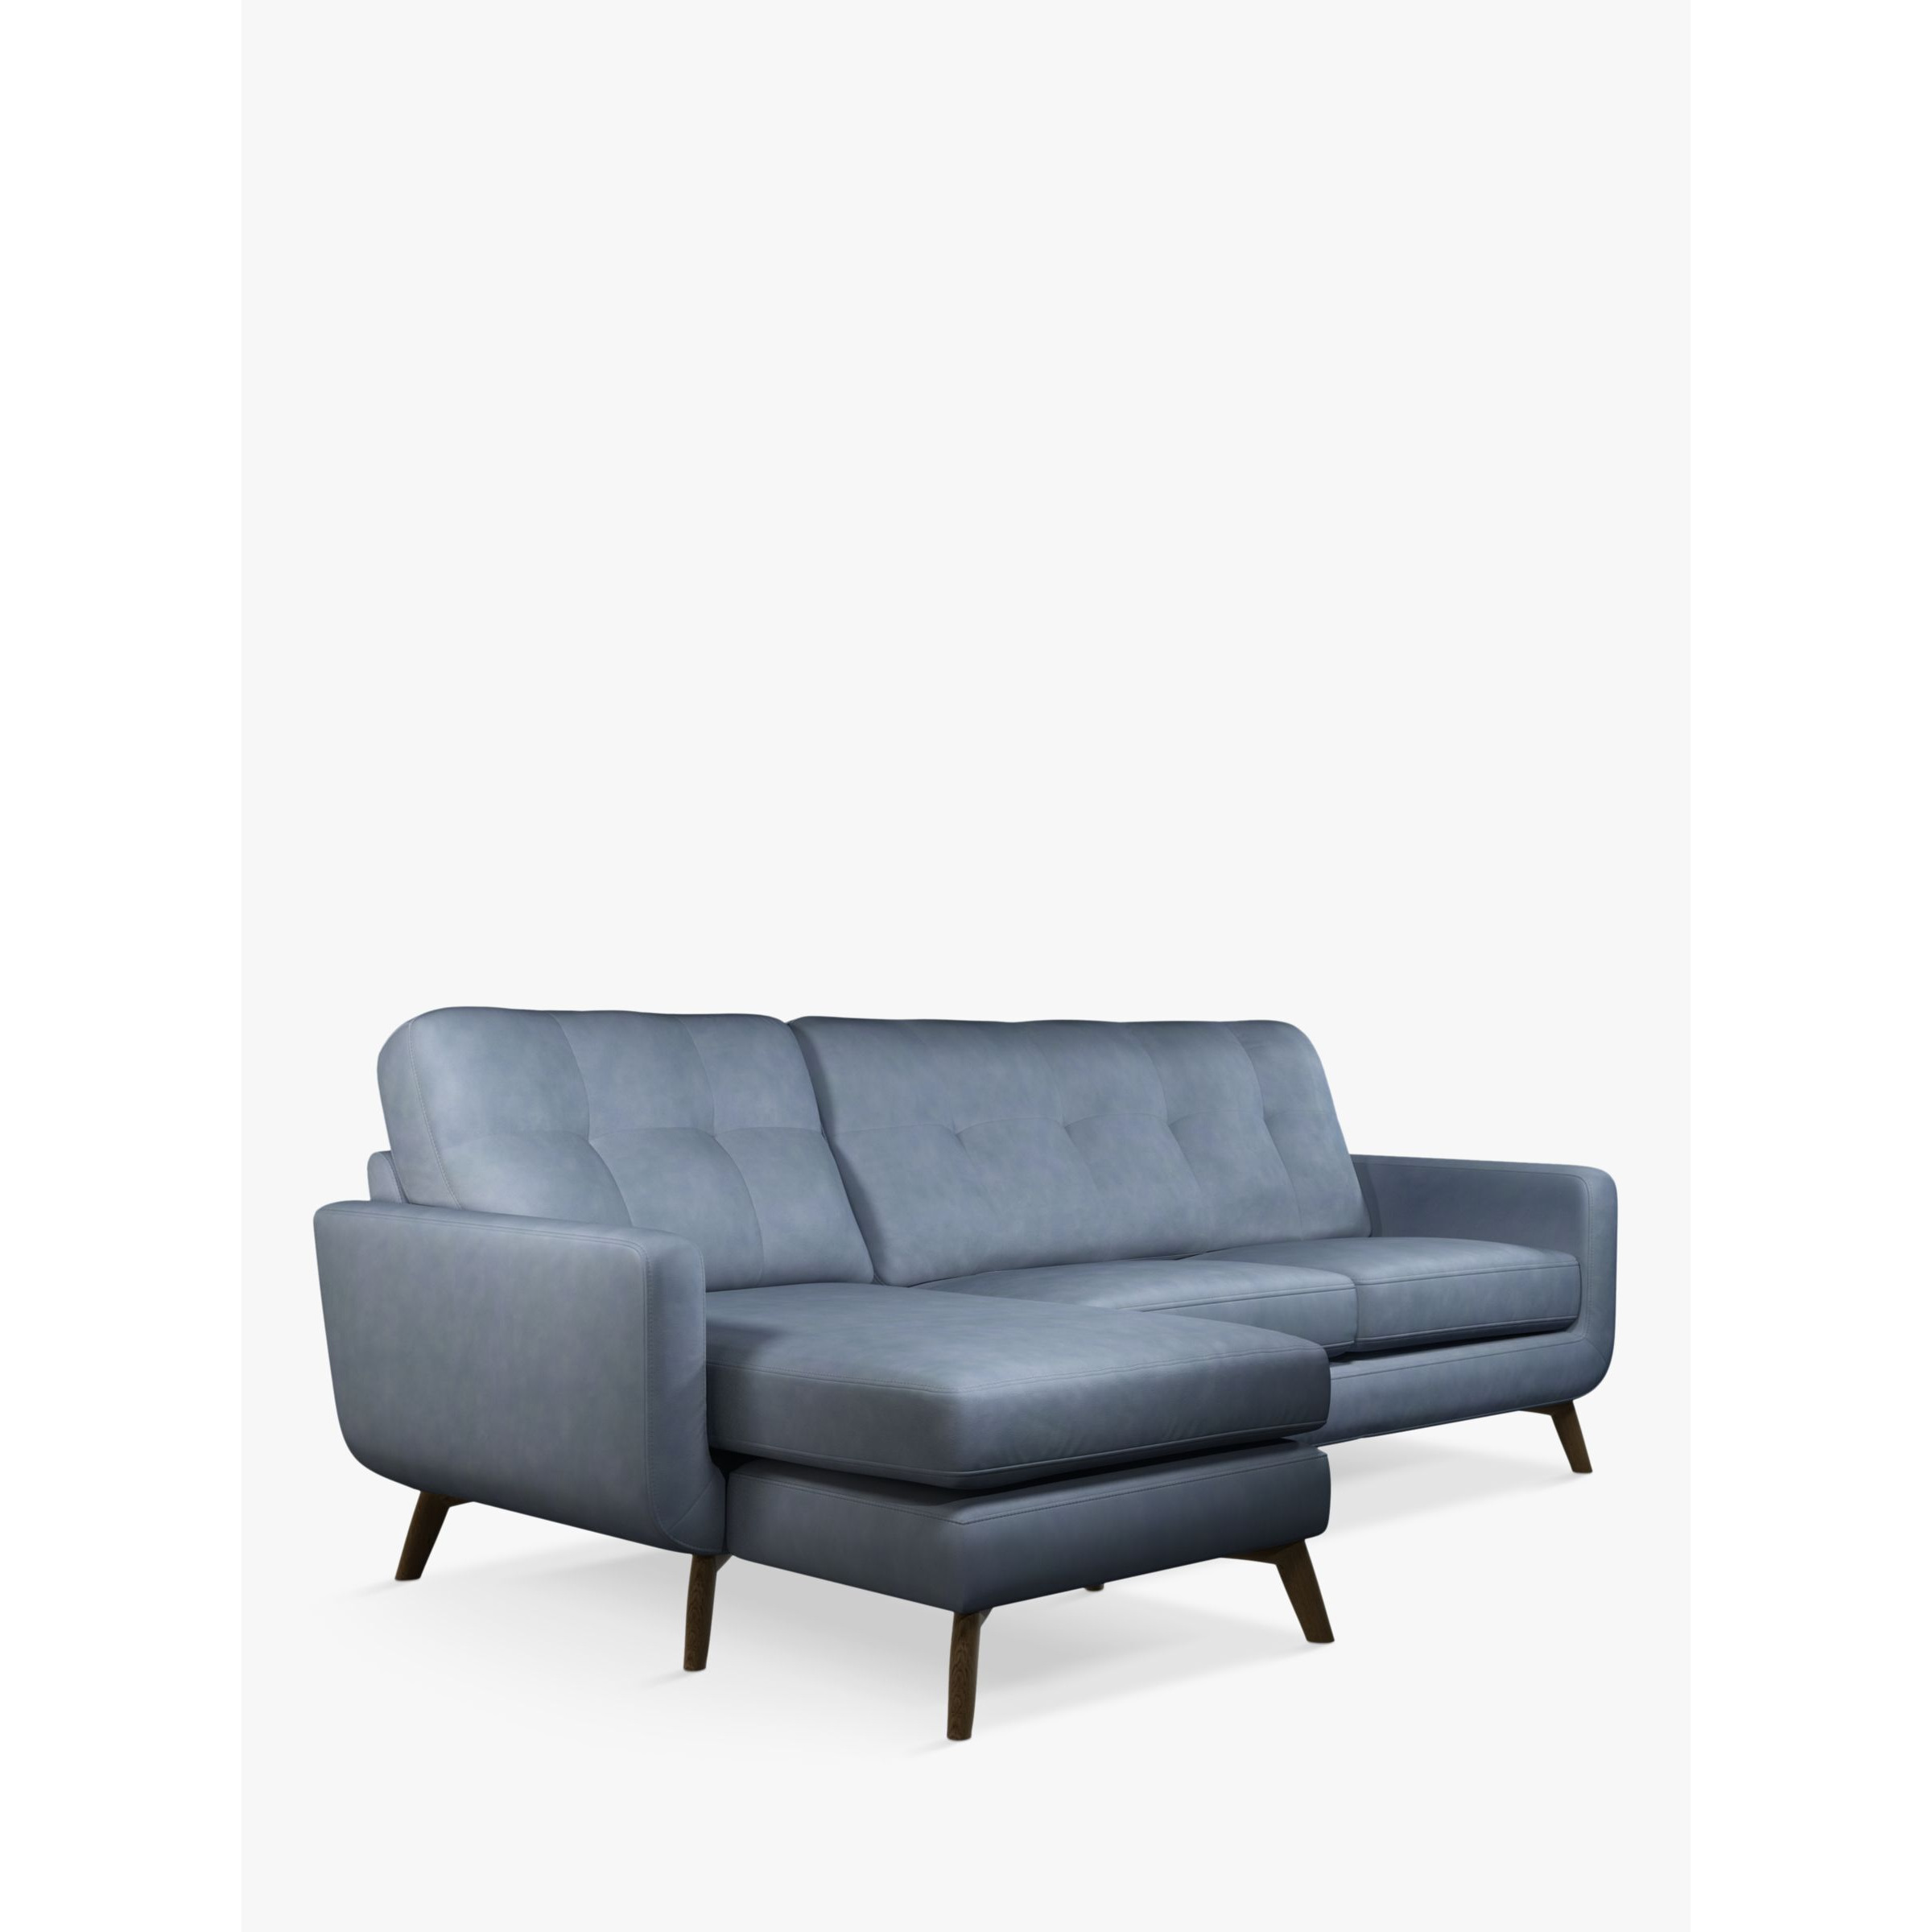 John Lewis Barbican LHF Chaise End Leather Sofa, Dark Leg - image 1